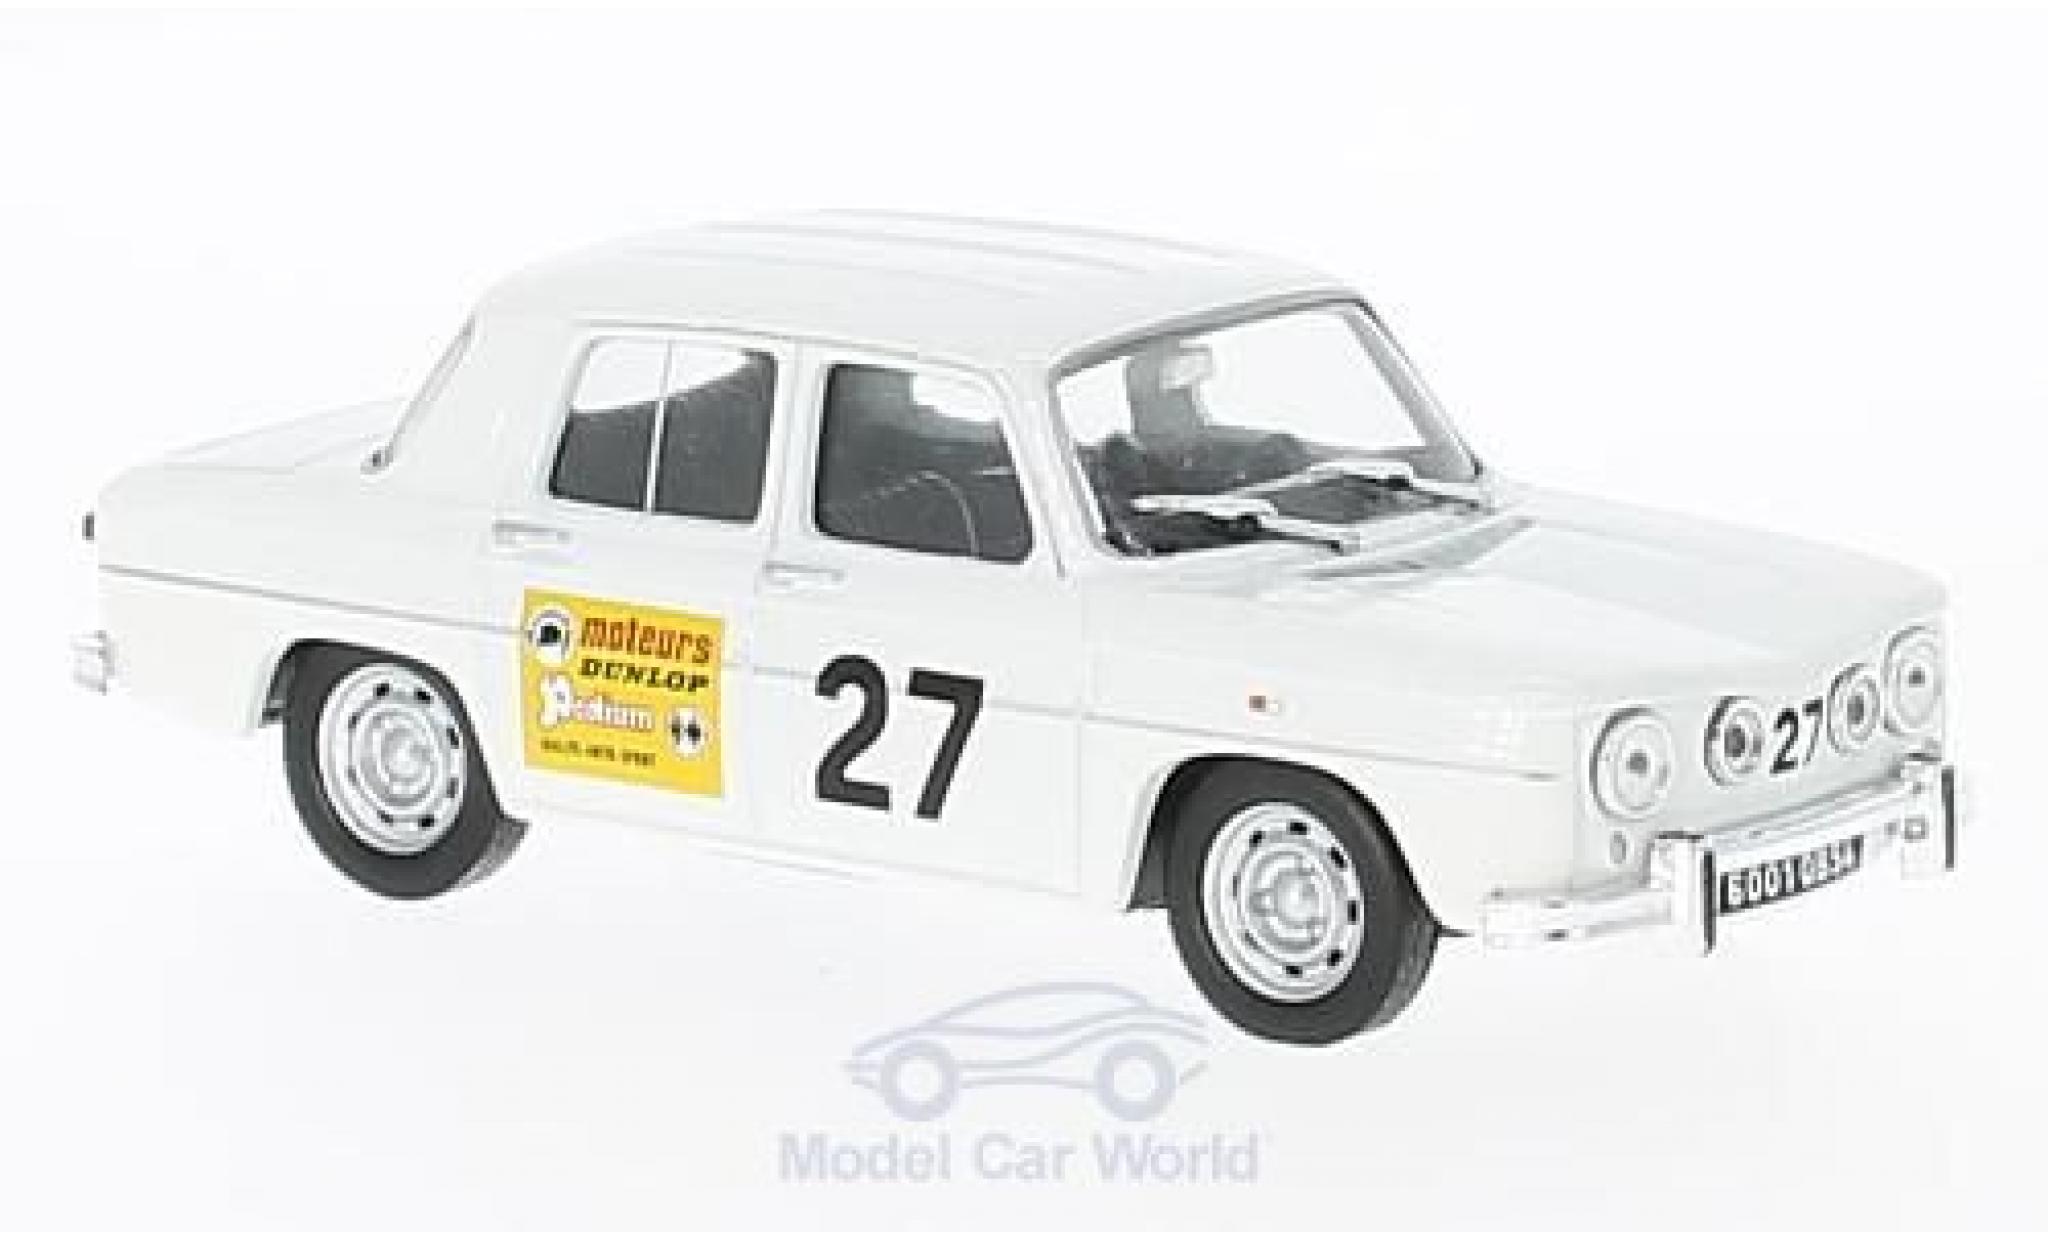 1/43 Renault 8 1964 Voiture Miniature Collection Idée Cadeau No R10 S  Gordini R8